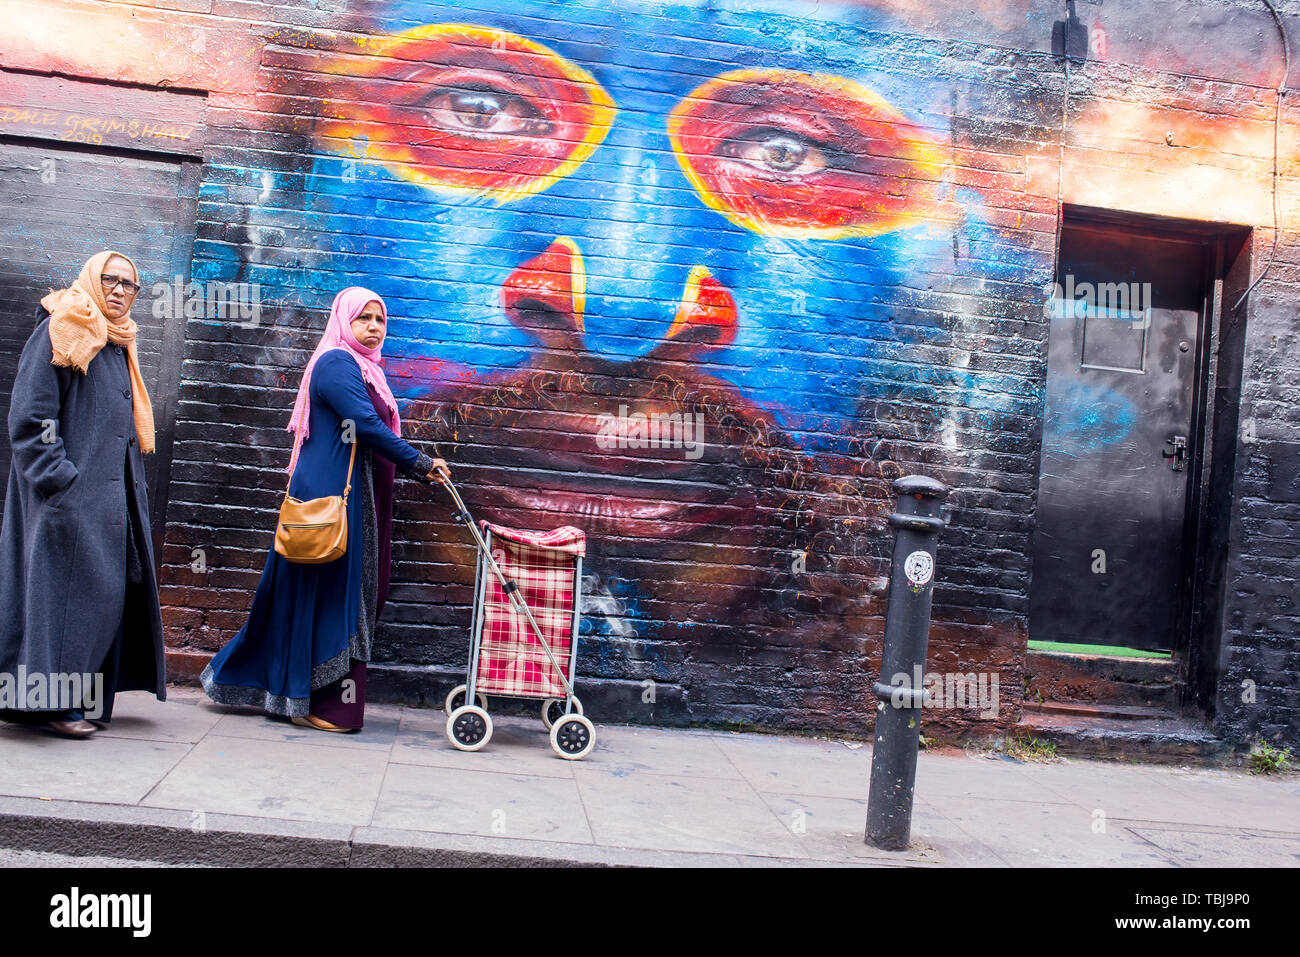 Brick Lane, Shoreditch, London, England, UK - April 2019: Zwei indische Frauen, Hijabs wandern in Brick Lane in der Nähe einer Wand in Graffiti mur abgedeckt Stockfoto